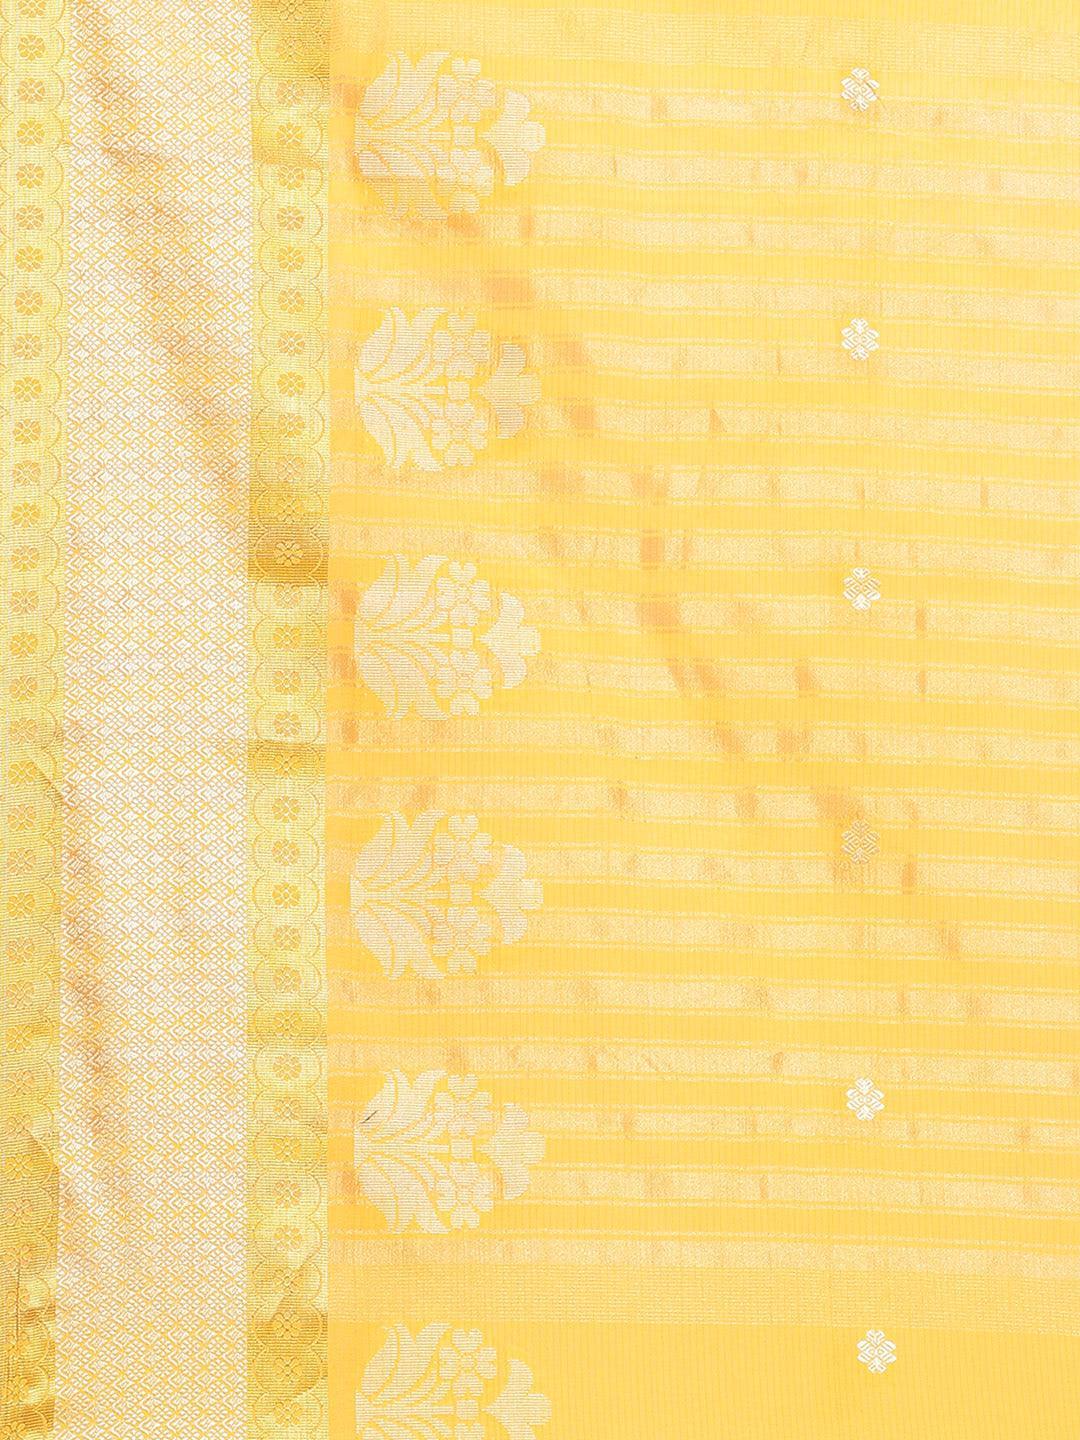 Yellow Woven Design Cotton Saree - ShopLibas